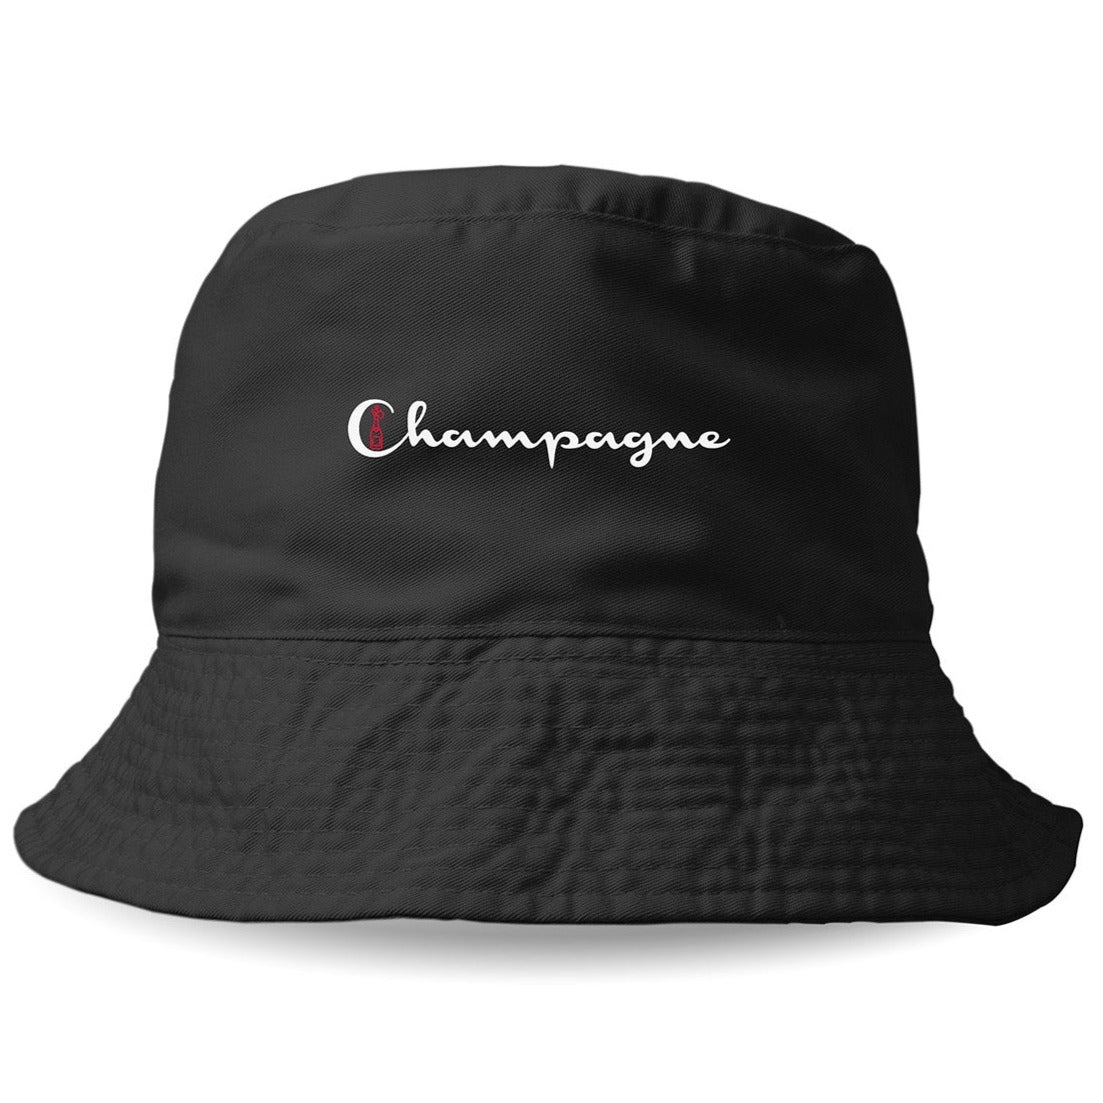 CHAMPAGNE - Bucket Hat